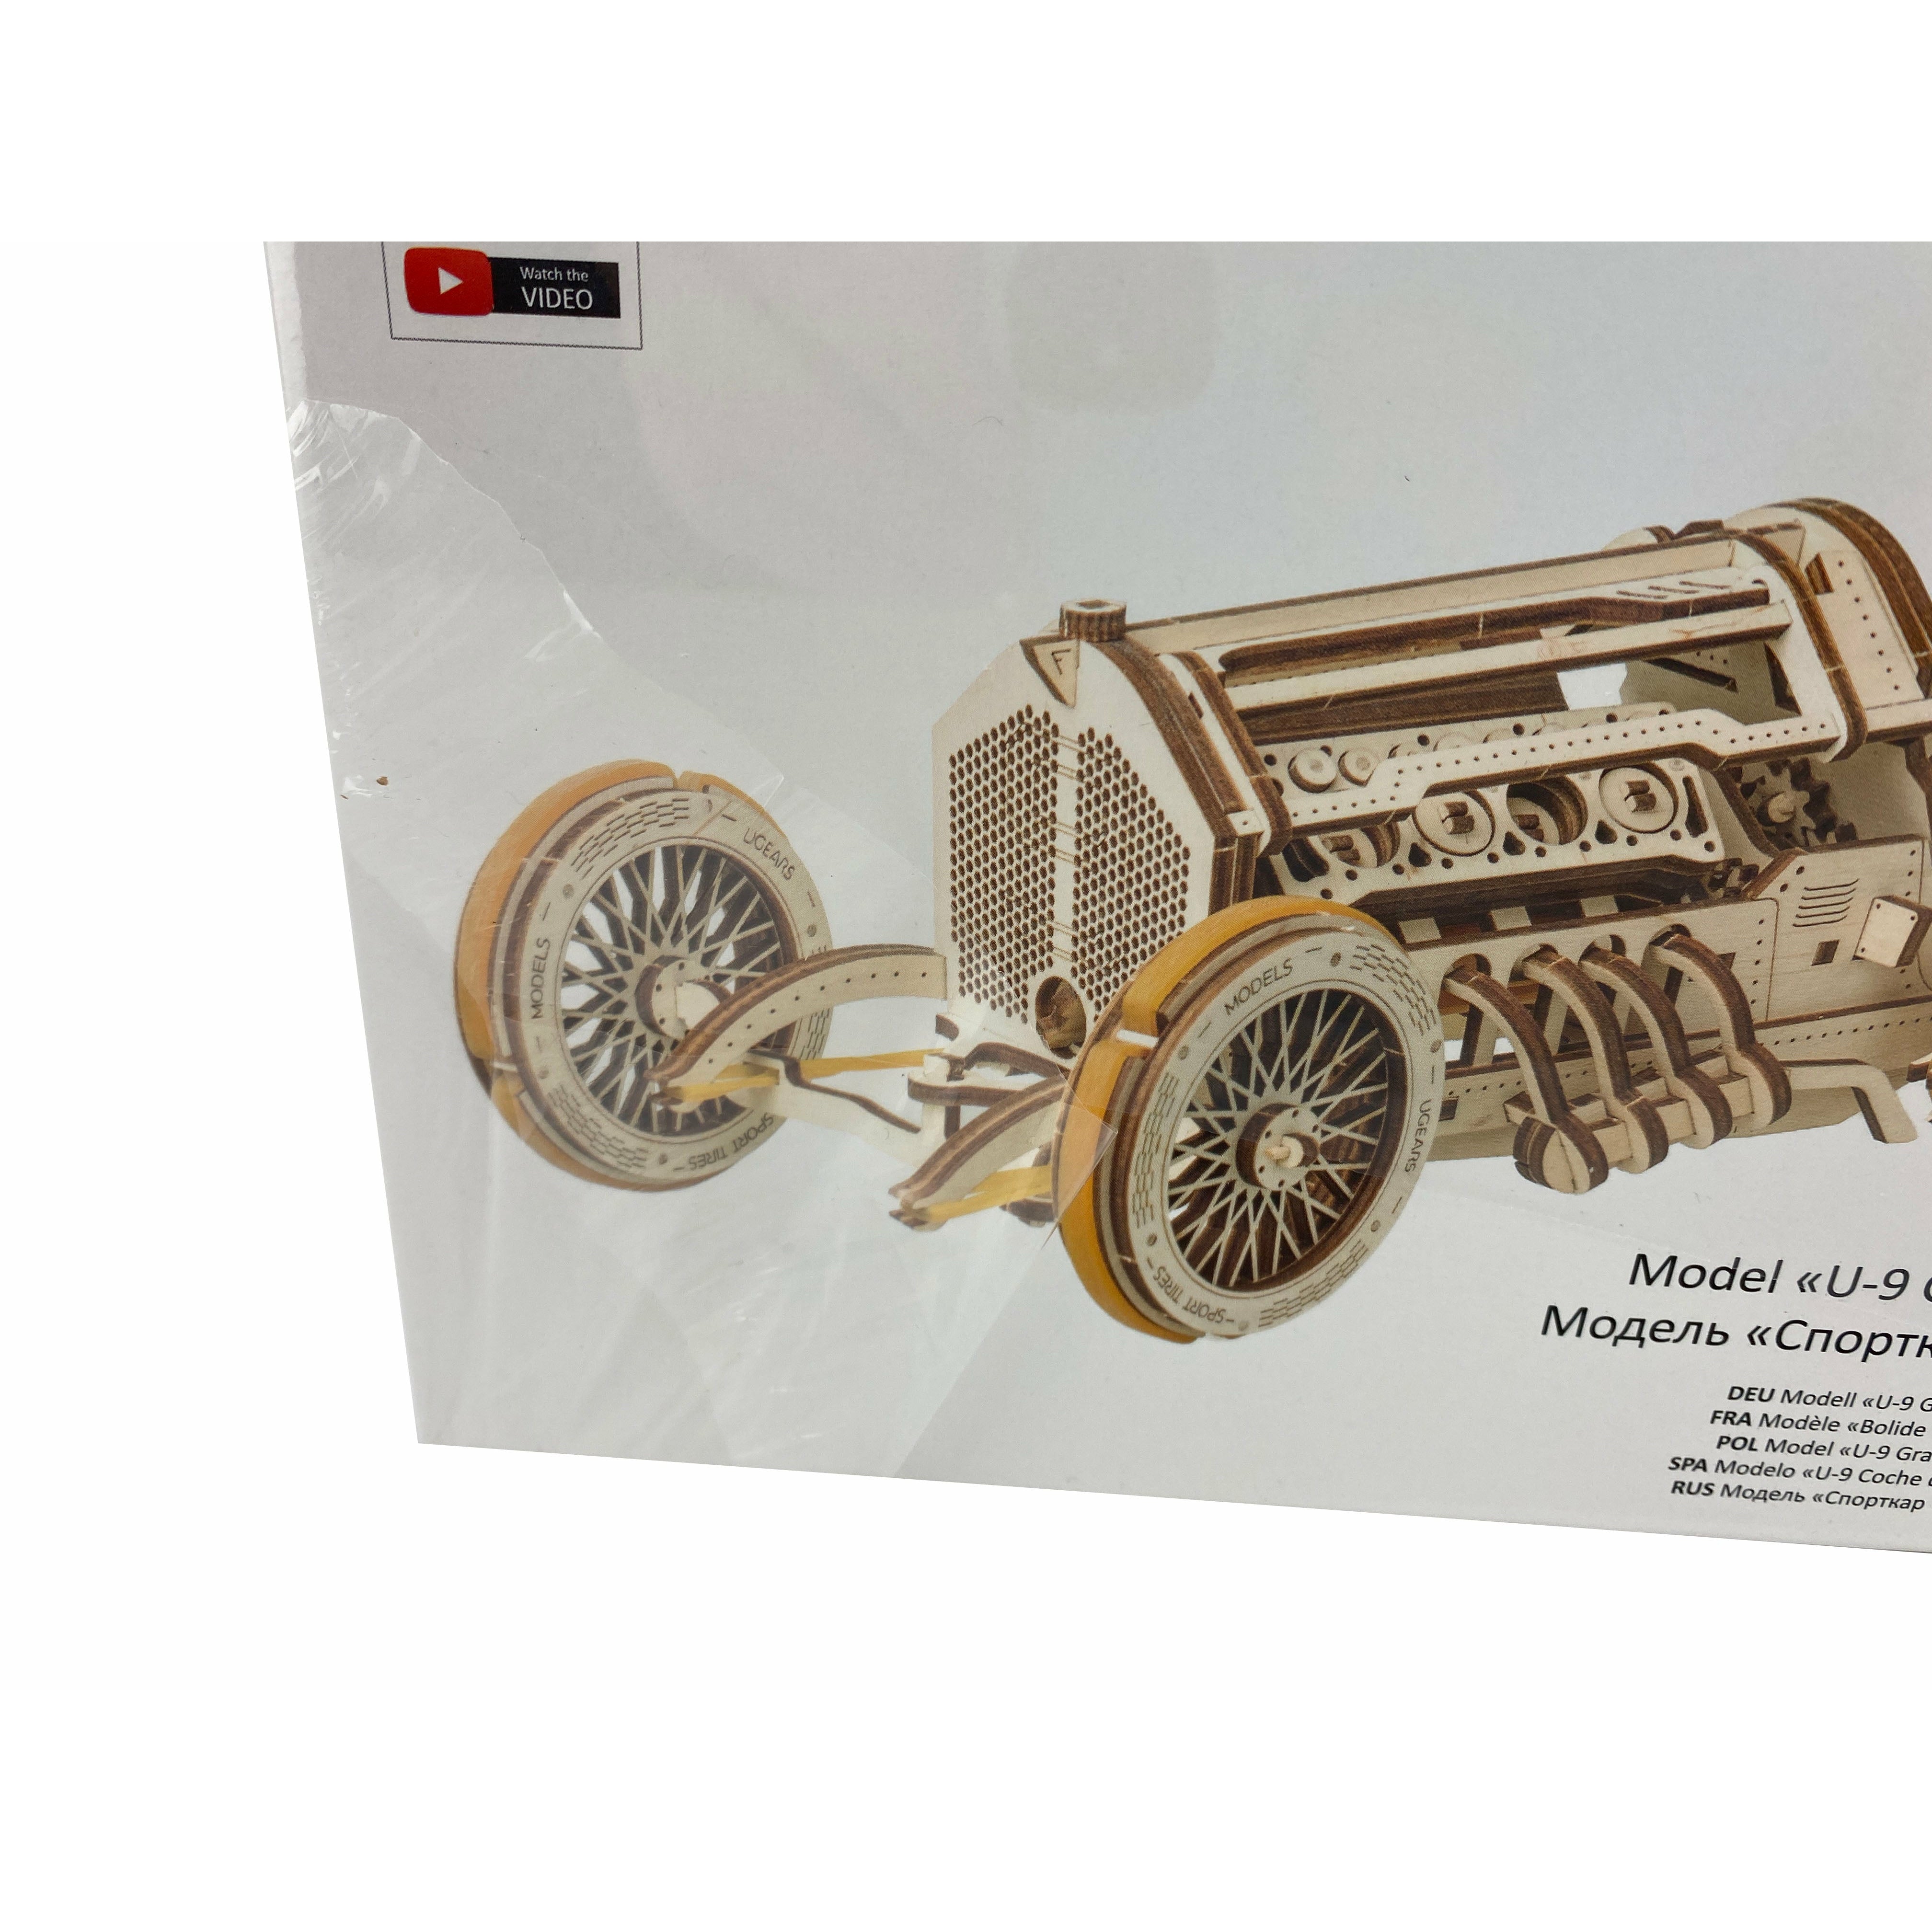 Ugears Wooden Building 3D Models / U9- Grand Prix Car / DIY Functional Models / Decorative **DEALS